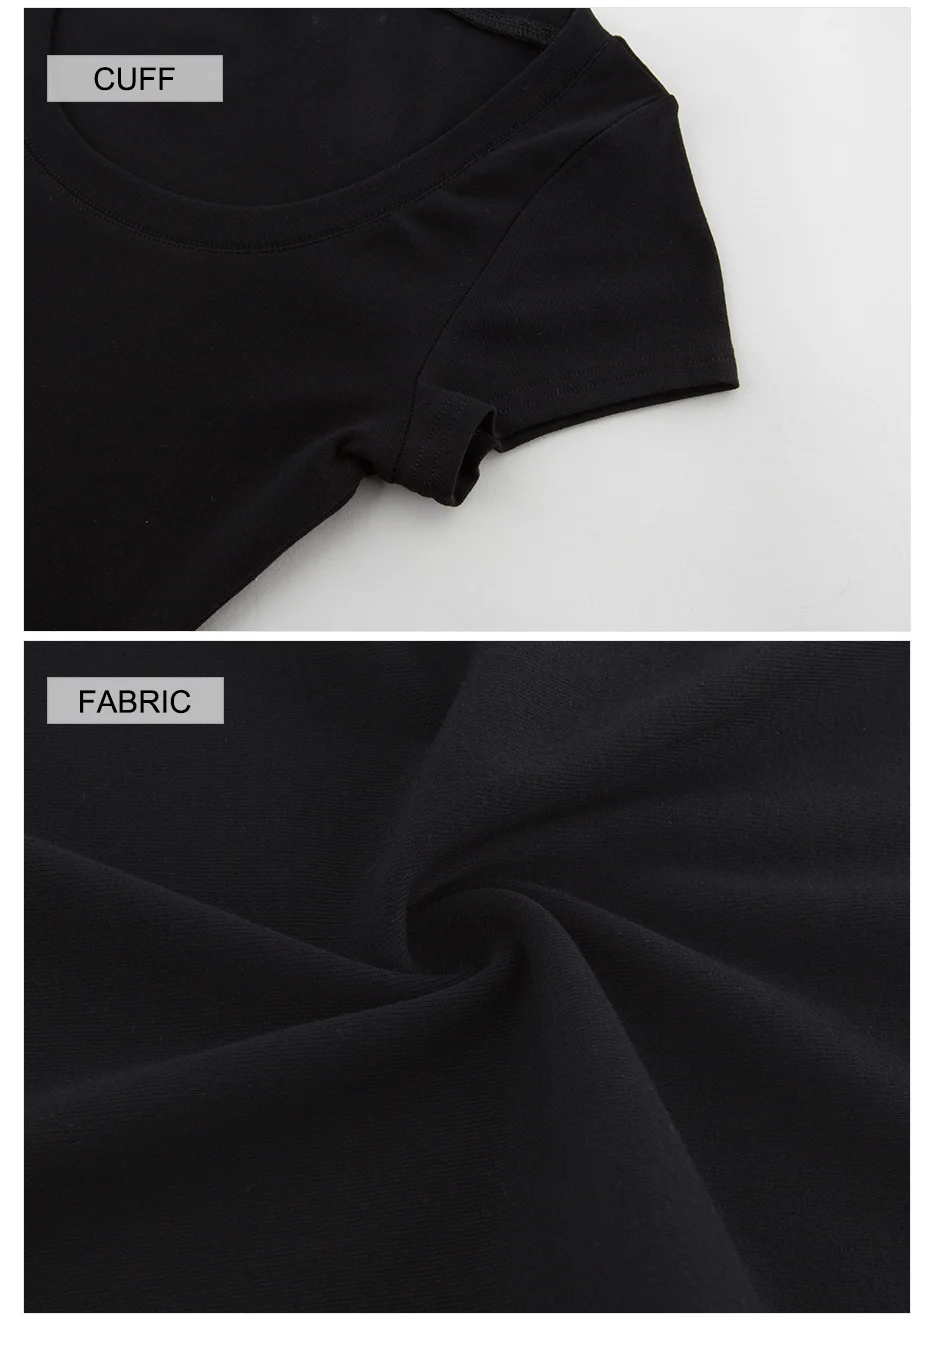 Oukytha высокое качество пикантные низкие летние шорты рукавами Футболки женский тонкий белый/черный эластичный одноцветное Топы хлопок M16046